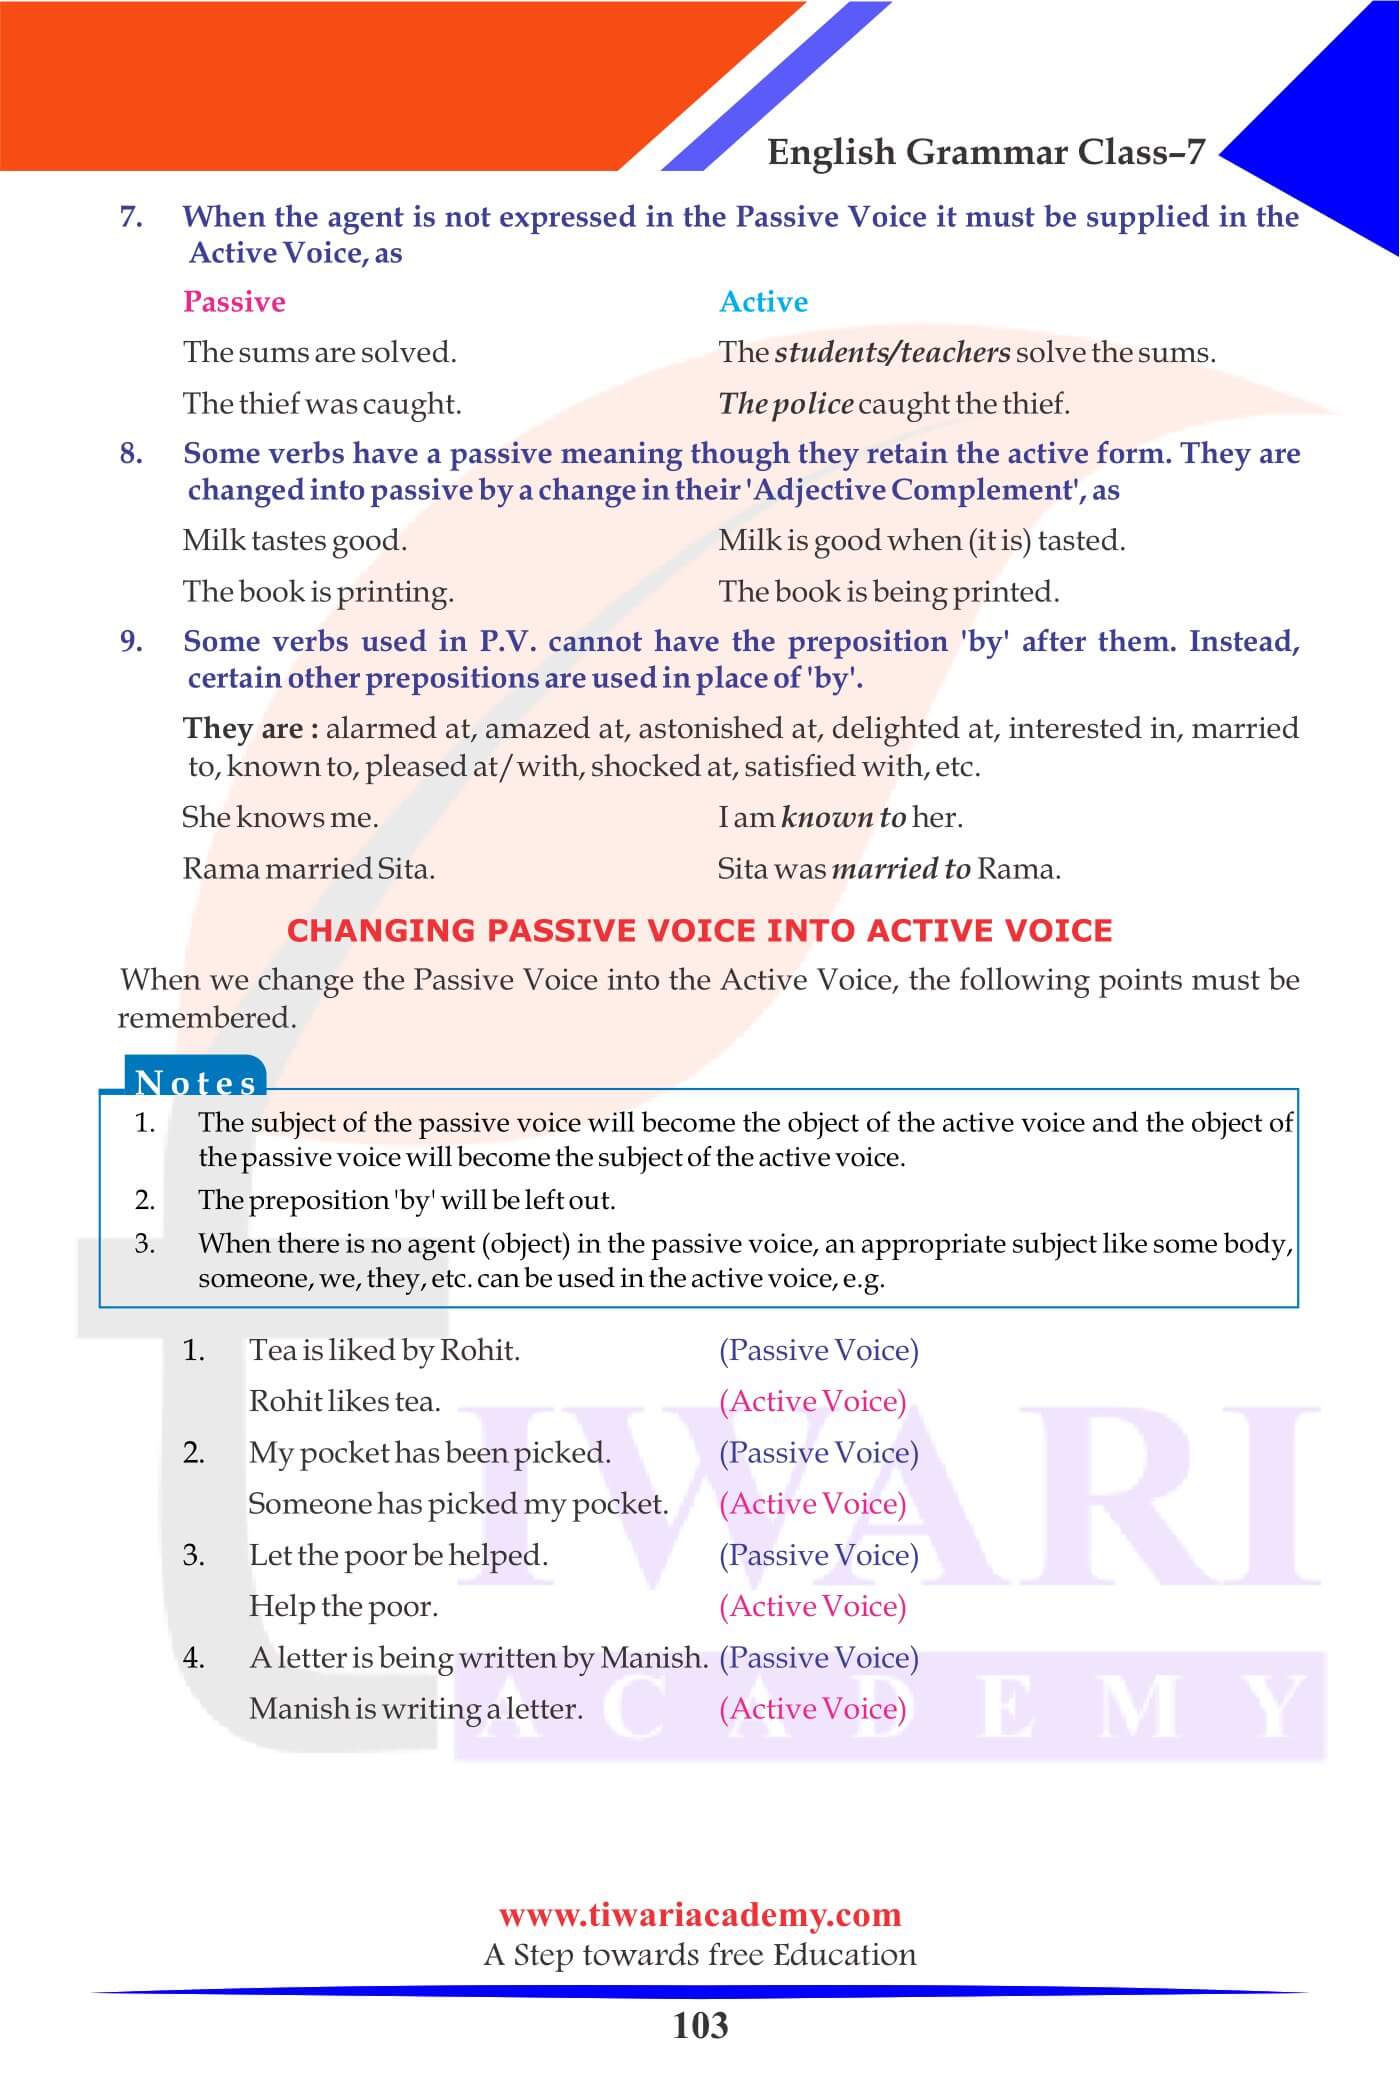 Class 7 English Grammar Chapter 16 textbook